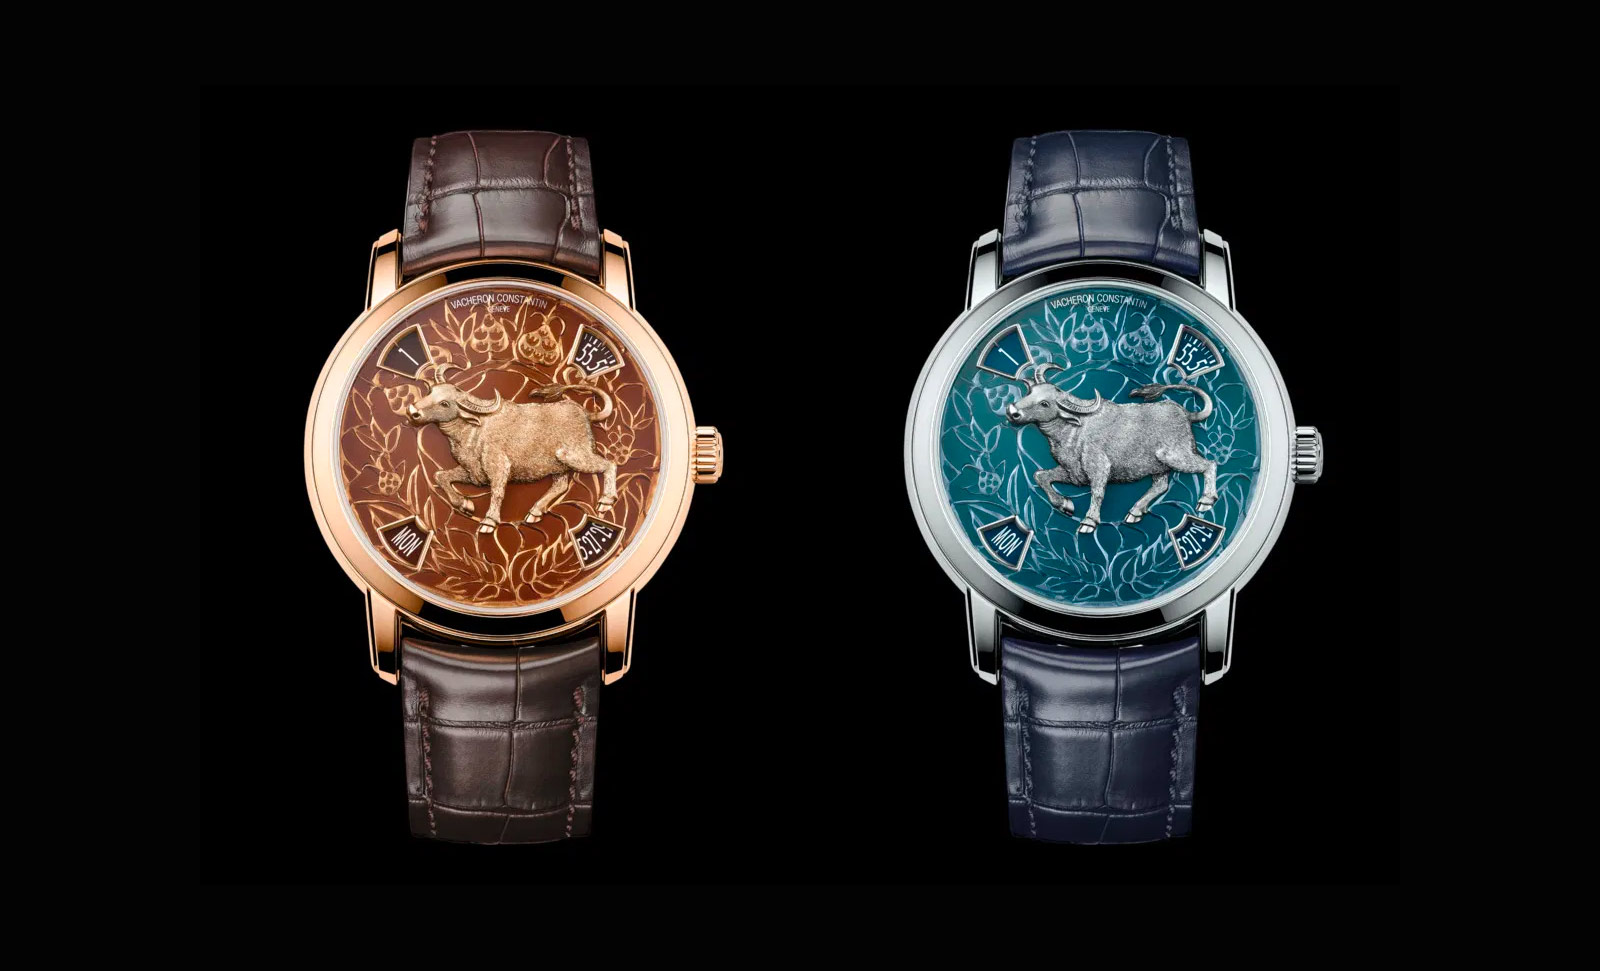 Vacheron Constantin представил чудесный образ быка в двух цветовых вариантах, продолжая линейку Legend of the Chinese Zodiac